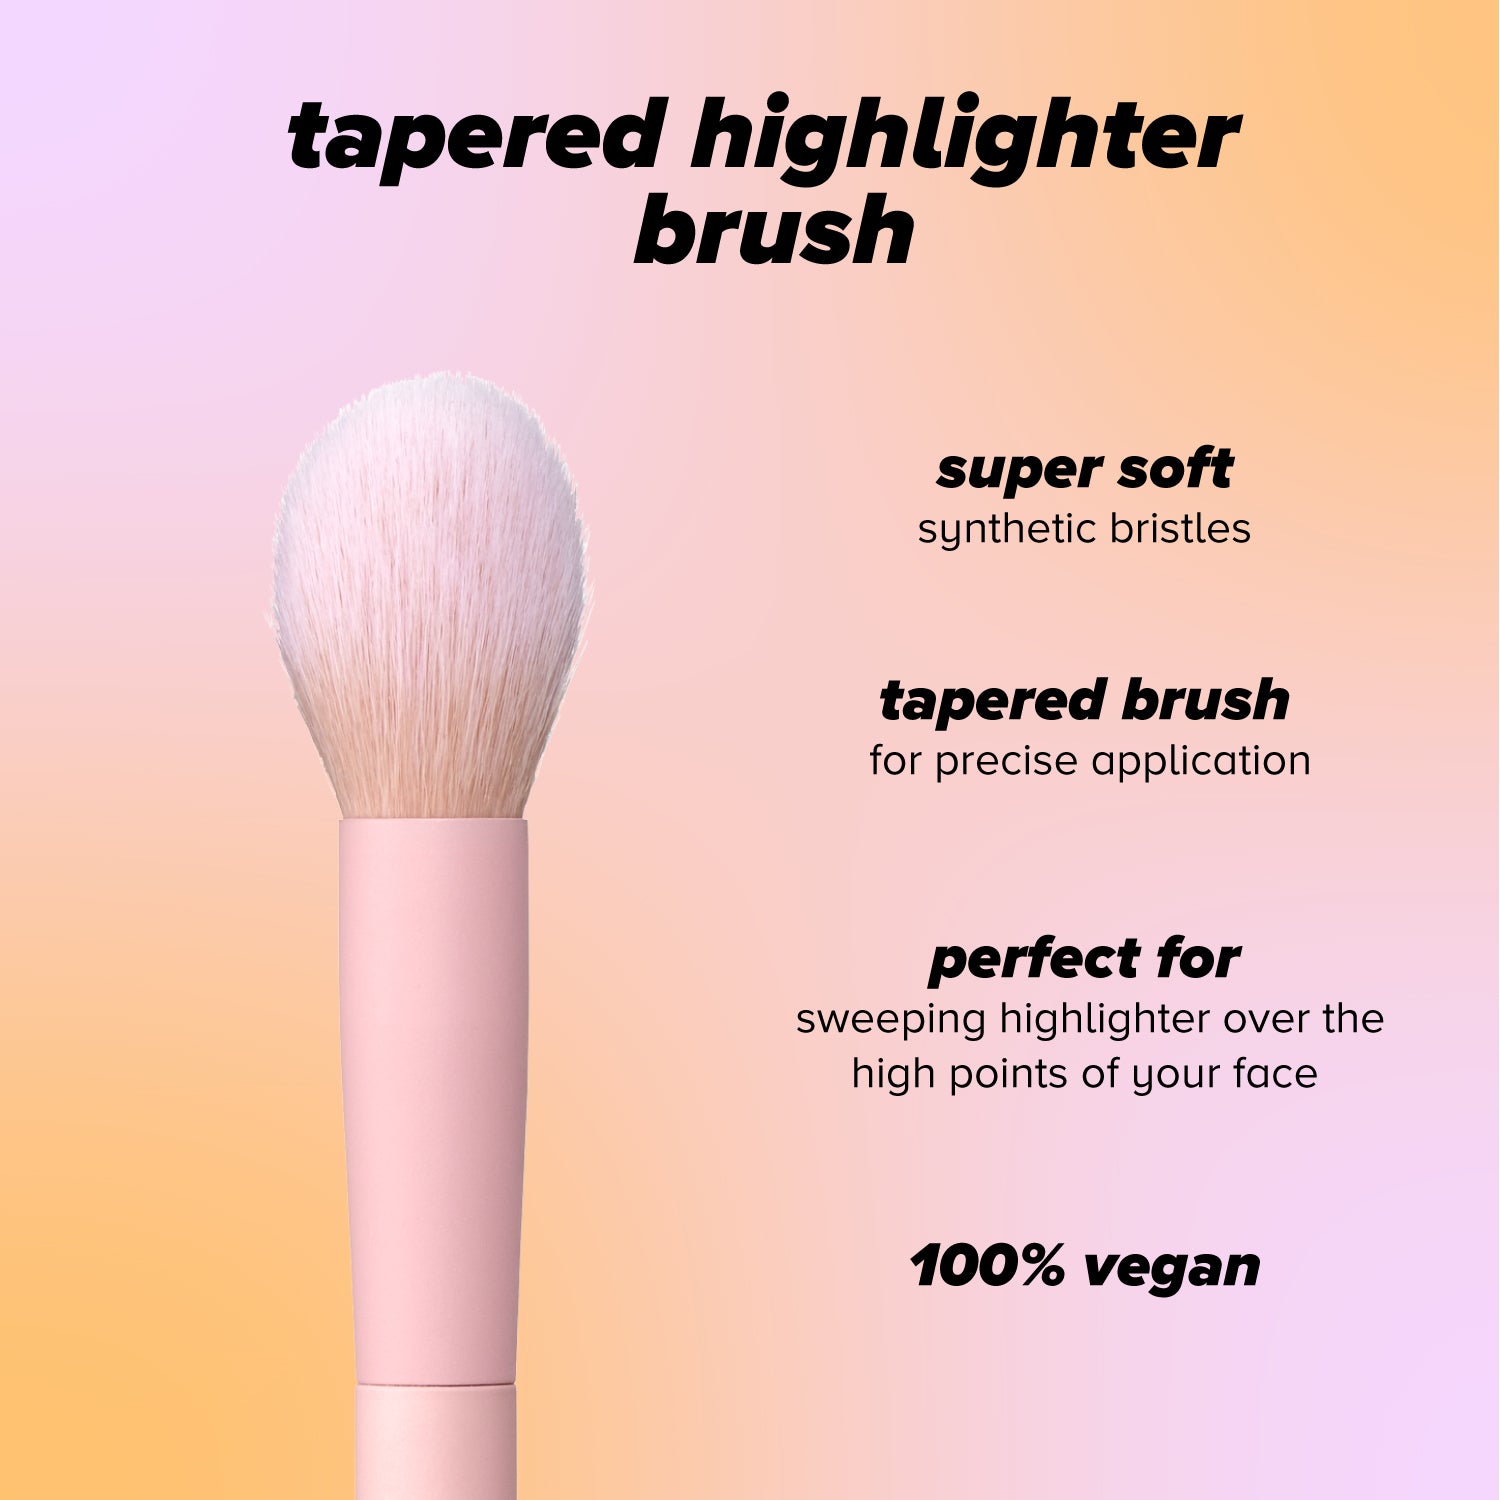 tapered highlighter brush